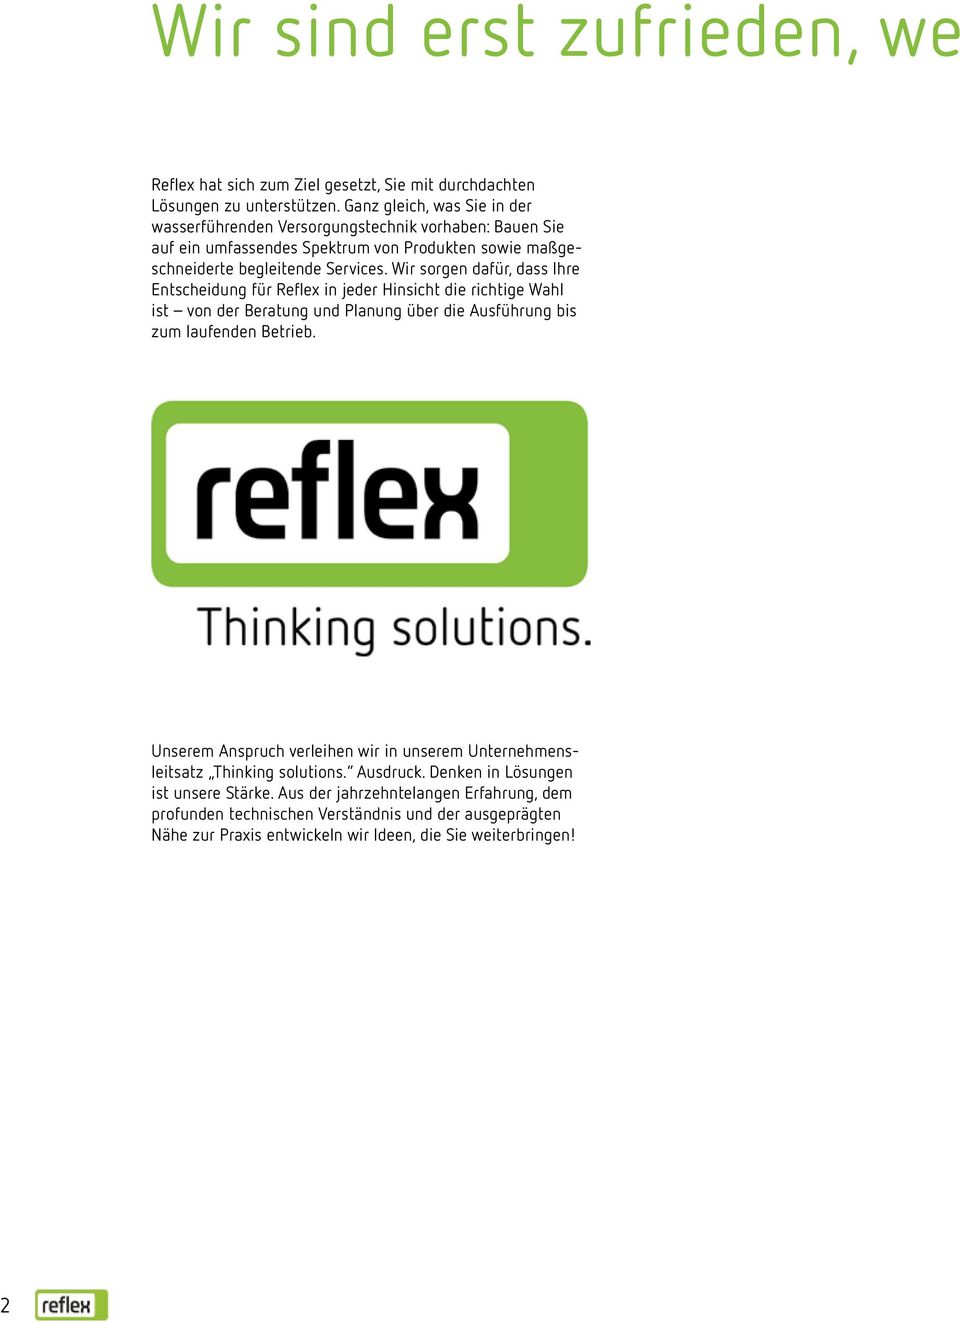 Wir sorgen dafür, dass Ihre Entscheidung für Reflex in jeder Hinsicht die richtige Wahl ist von der Beratung und Planung über die Ausführung bis zum laufenden Betrieb.